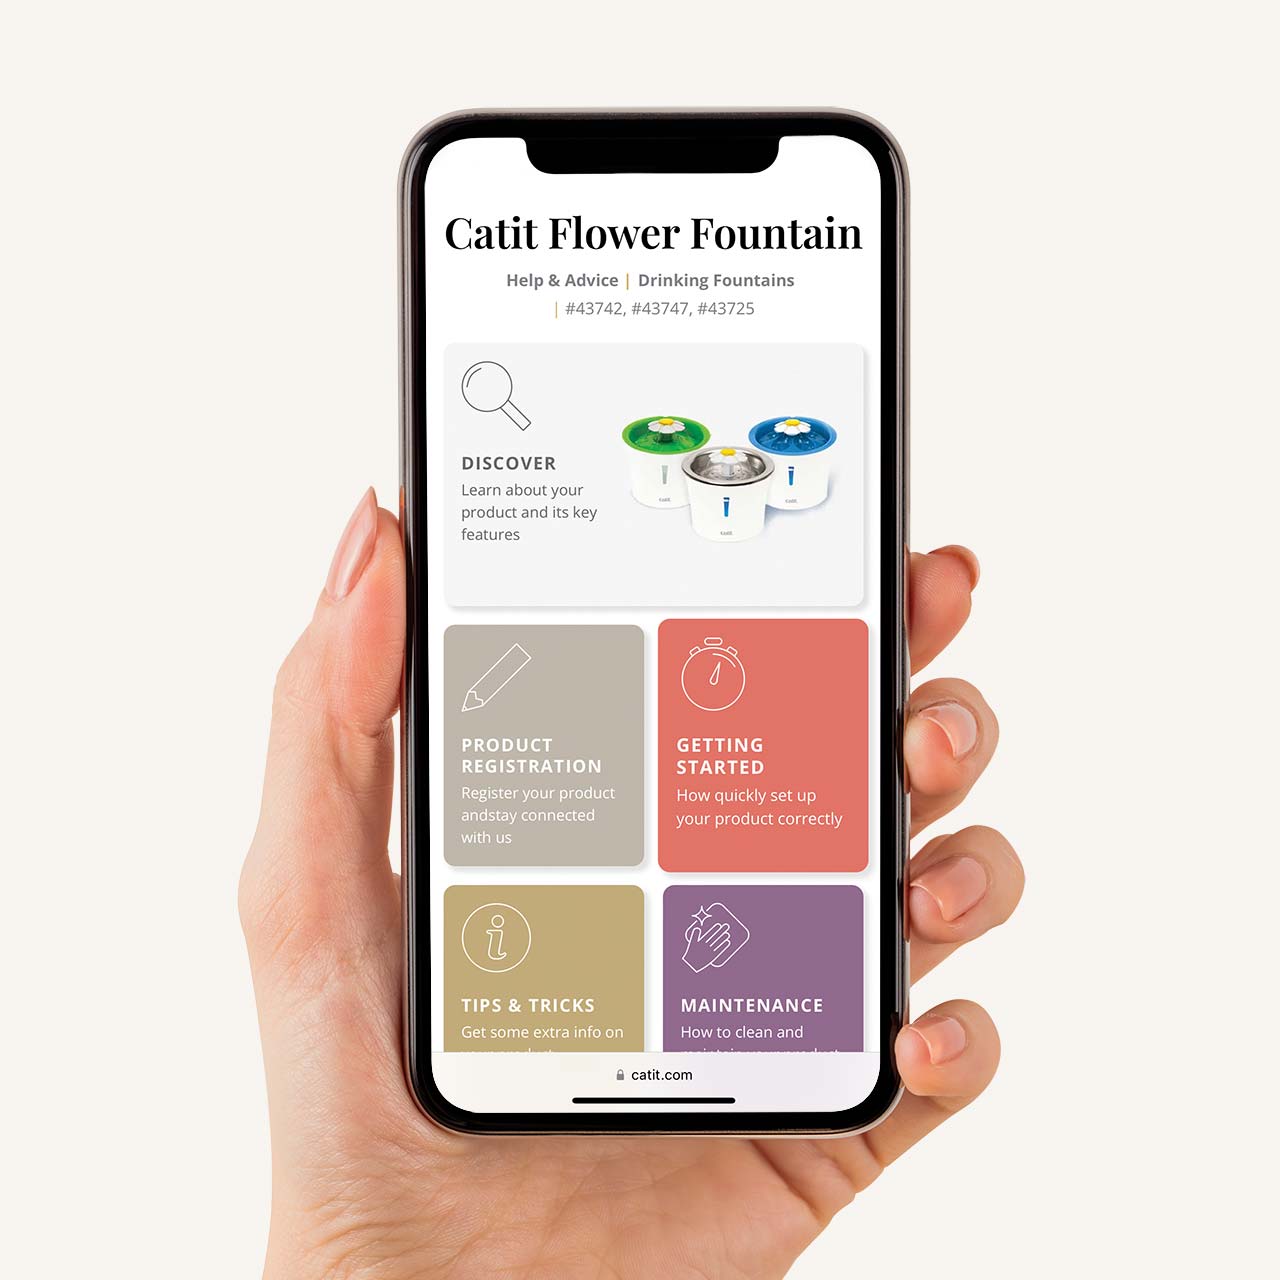 Help & Advice for Catit Flower Fountain